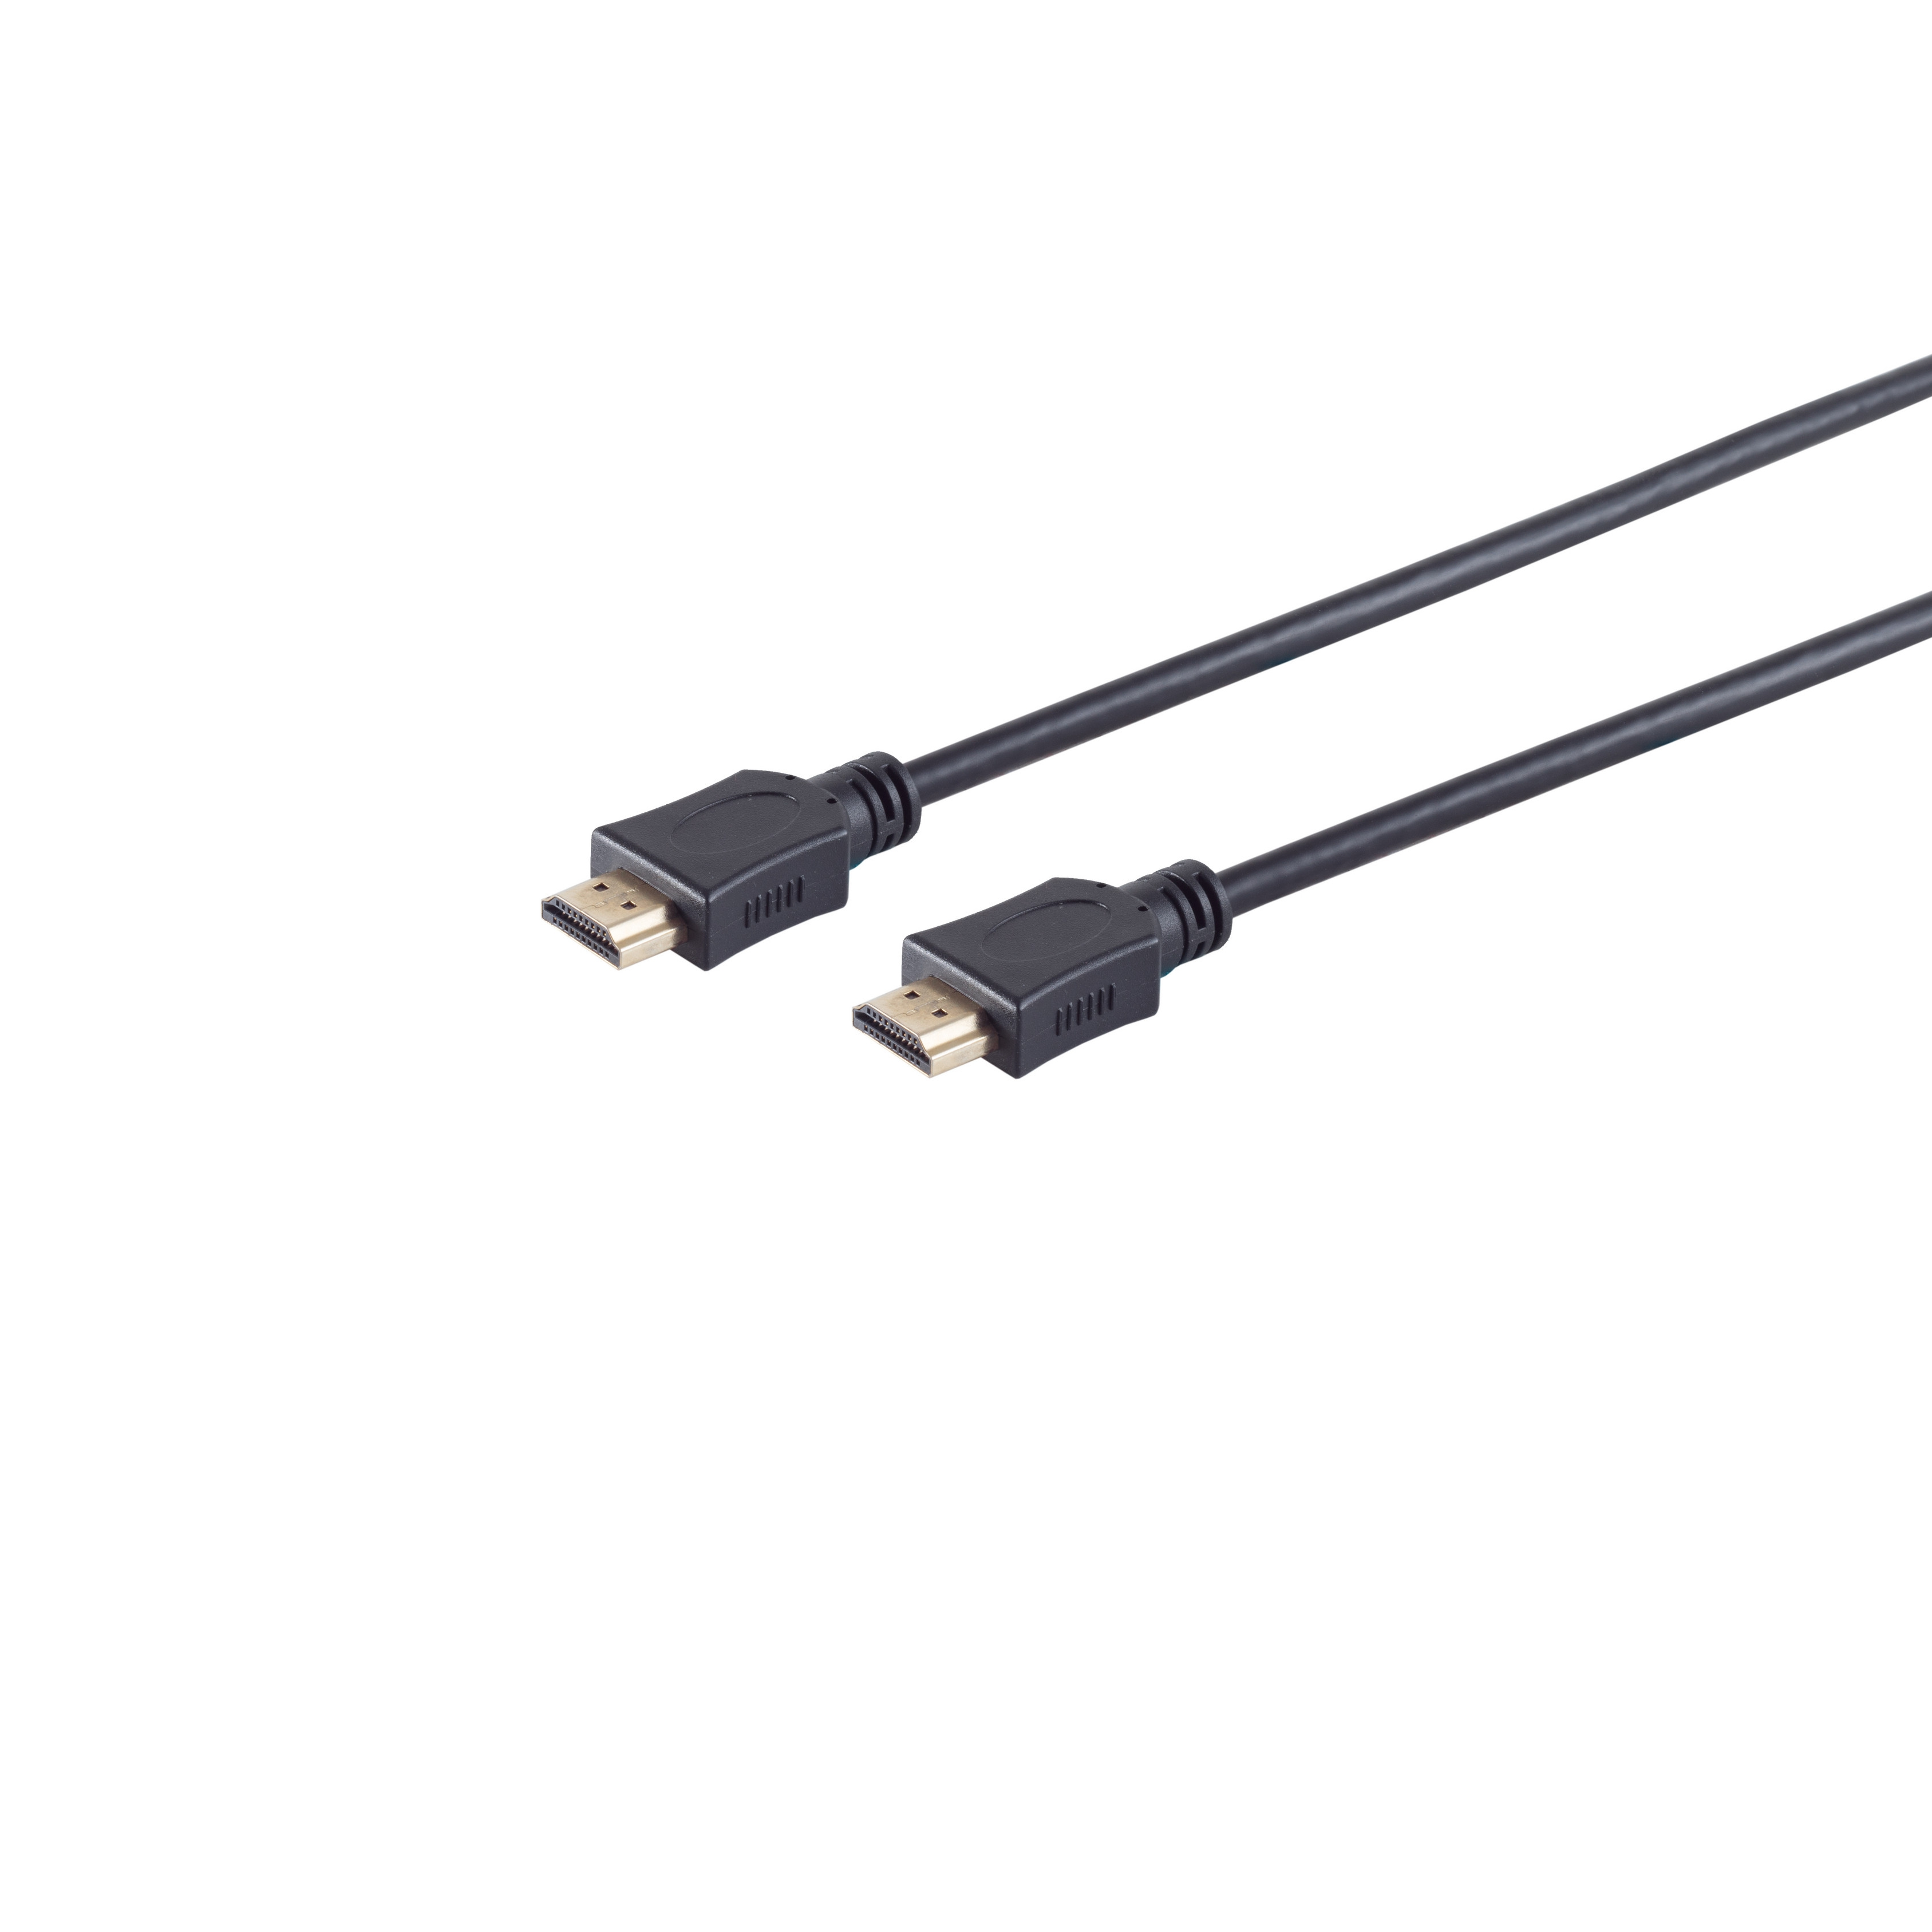 S/CONN MAXIMUM A-Stecker CONNECTIVITY HDMI verg. 10m / HEAC A-Stecker HDMI Kabel HDMI